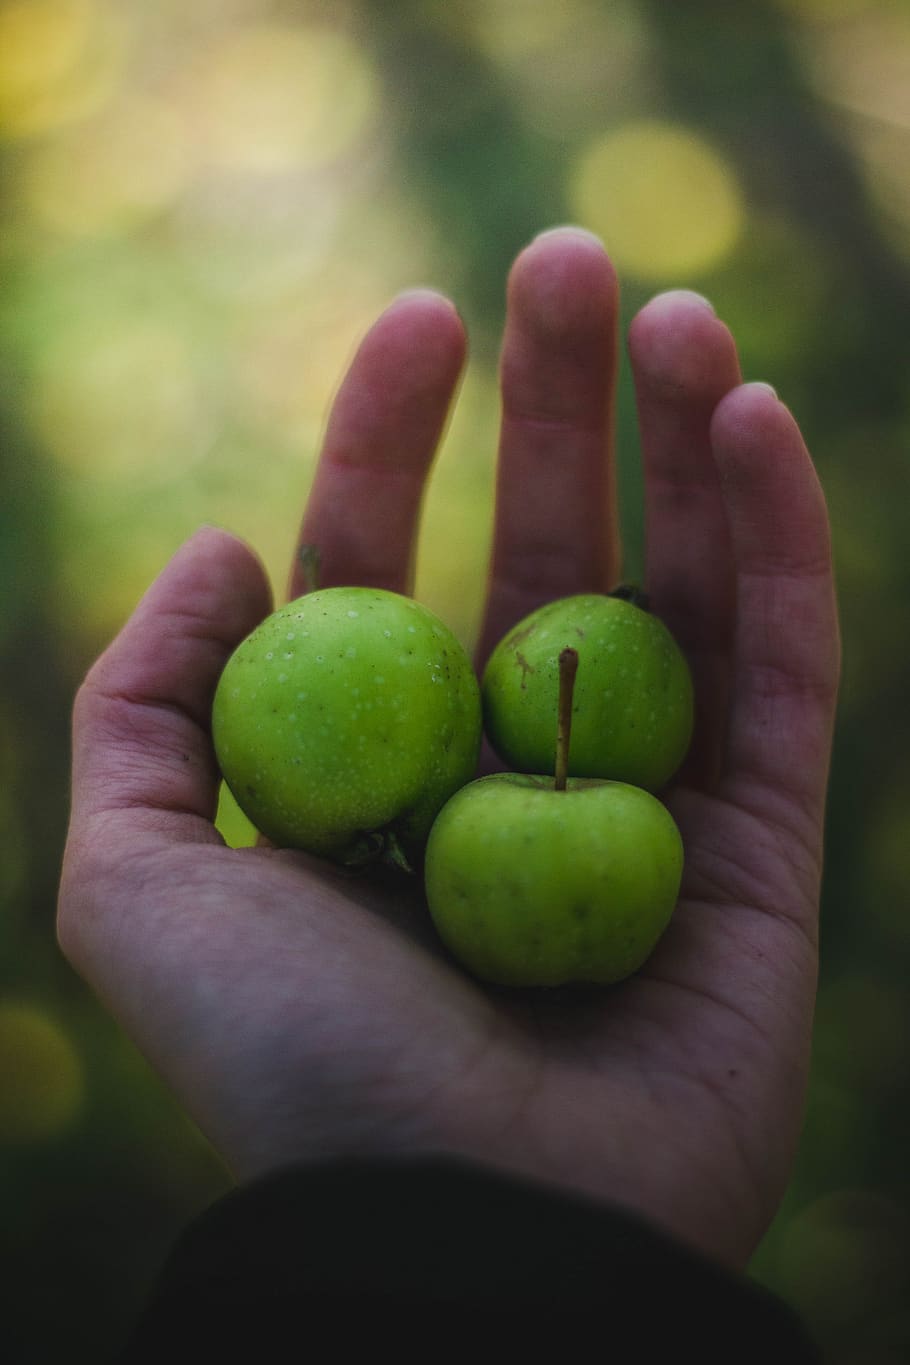 hijau, apel, buah, berair, makanan, palem, tangan, buram, tangan manusia, bagian tubuh manusia